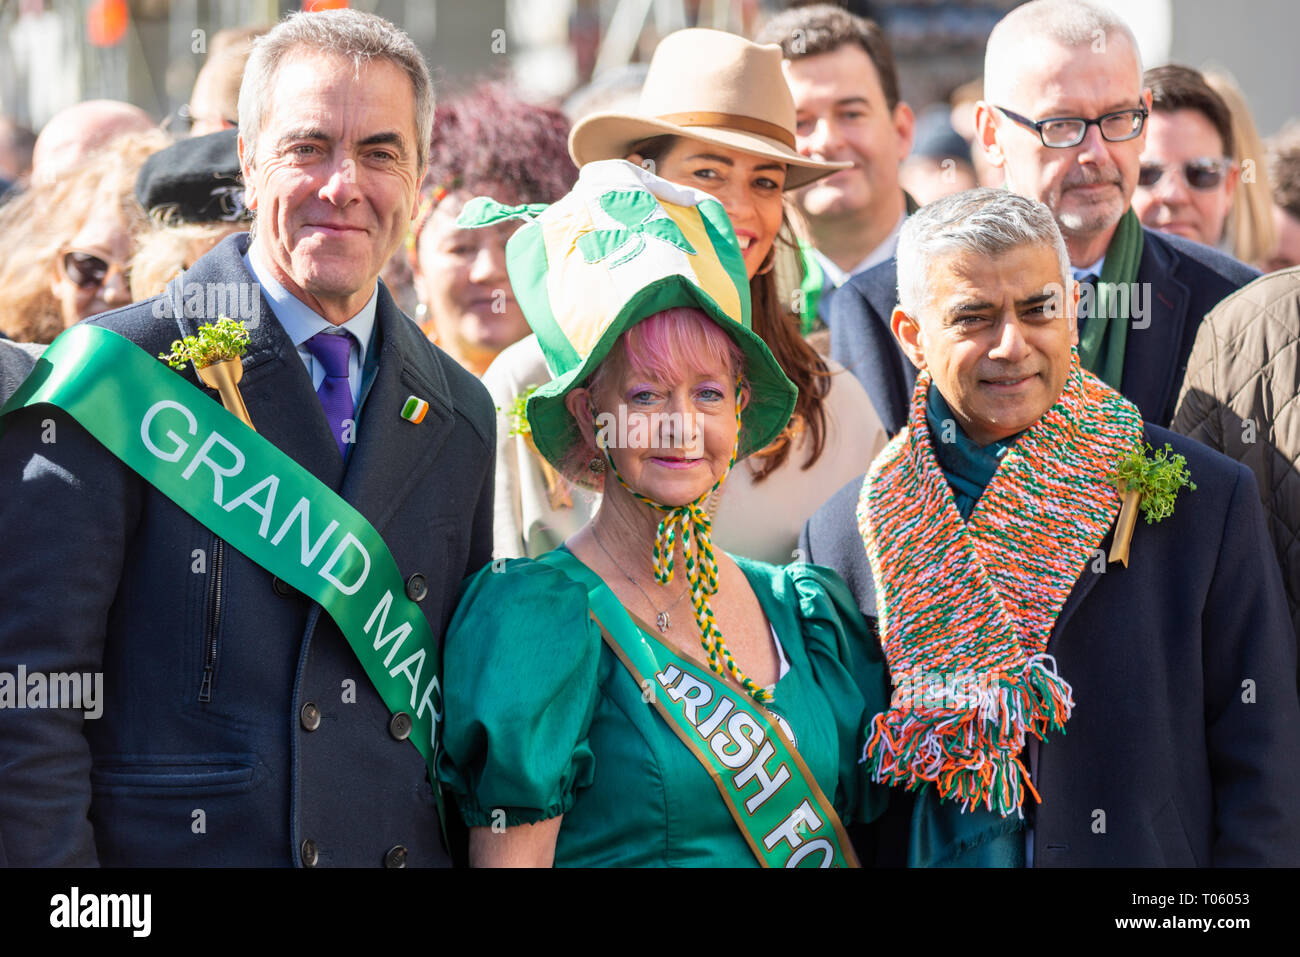 Traditionelle St. Patrick's Day Parade durch London, UK hatte Schauspieler James Nesbitt als Grand Marshall, Bürgermeister von London Sadiq Khan an der Spitze einer grossen Prozession Stockfoto